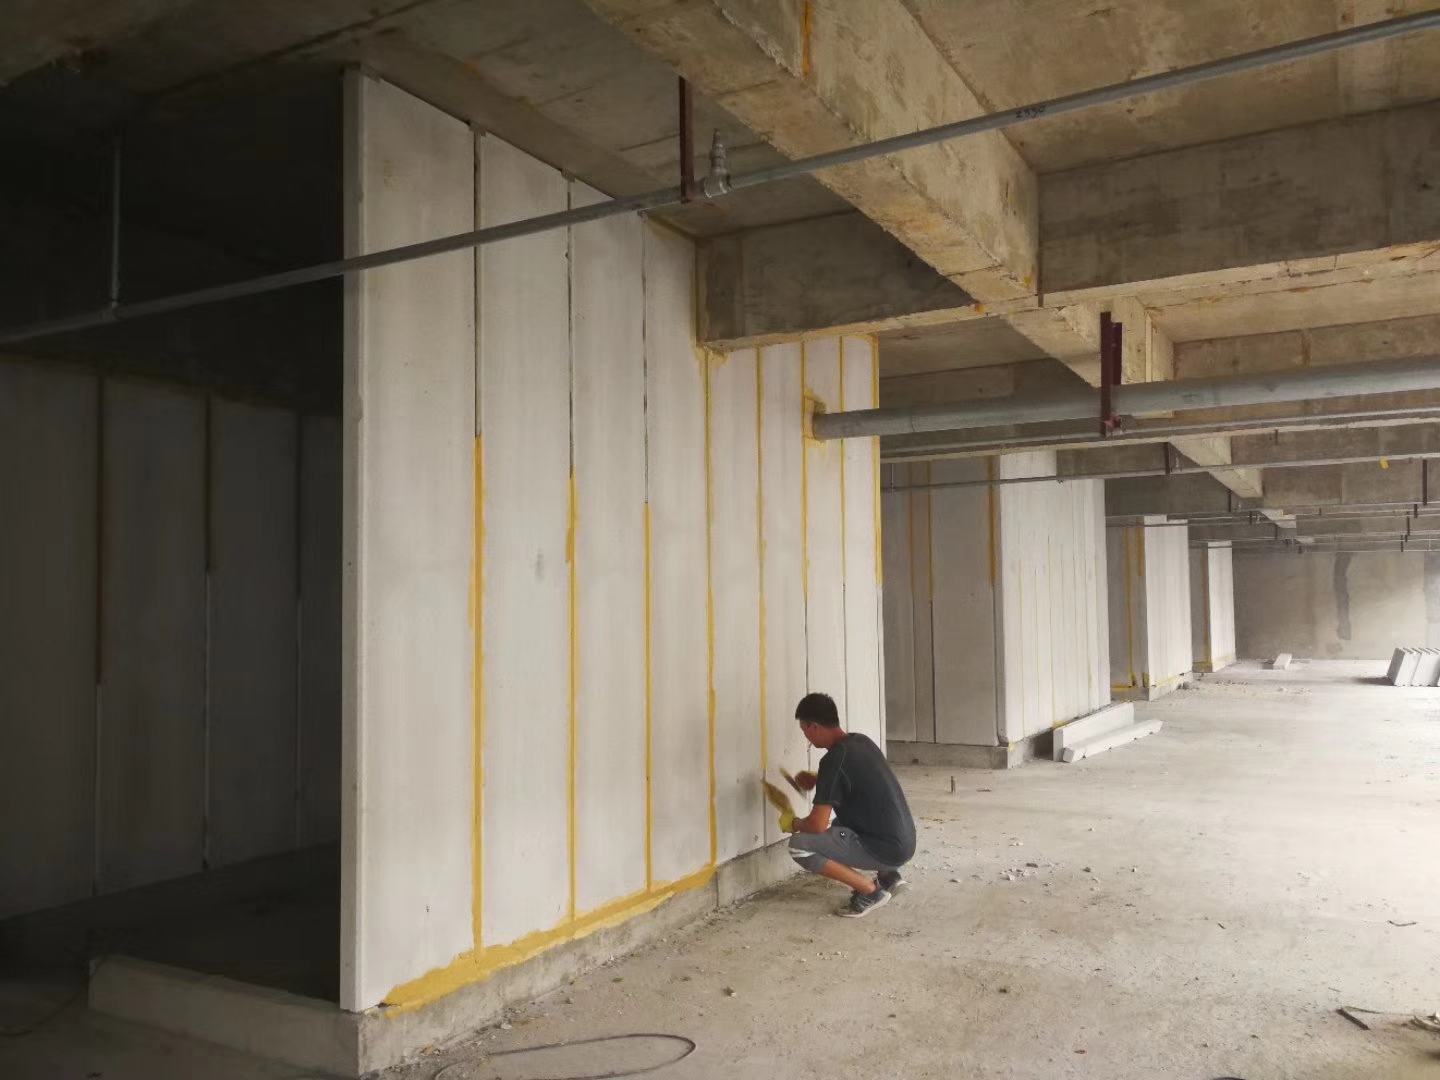 芝罘无机发泡轻骨料混凝土隔墙板施工技术性能研究